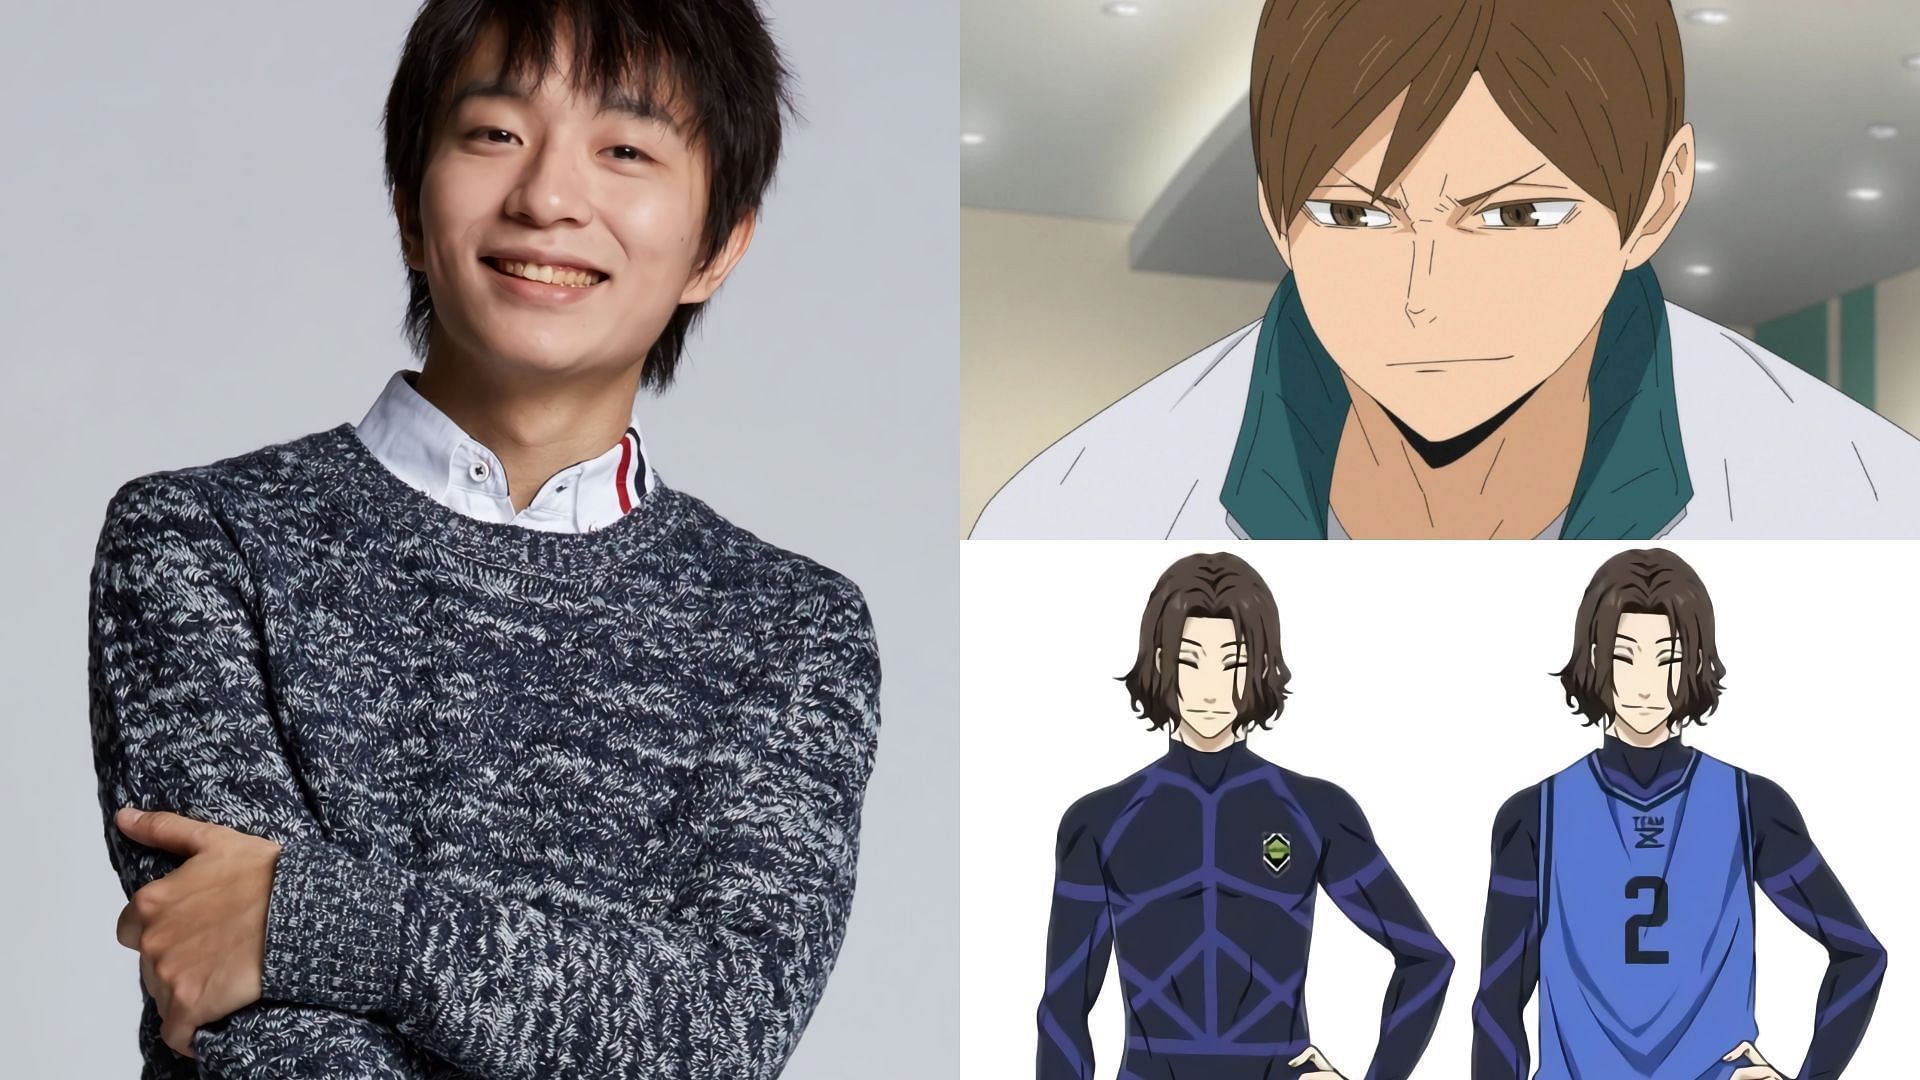 Masatomo Nakazawa and his characters (Image via Sportskeeda)